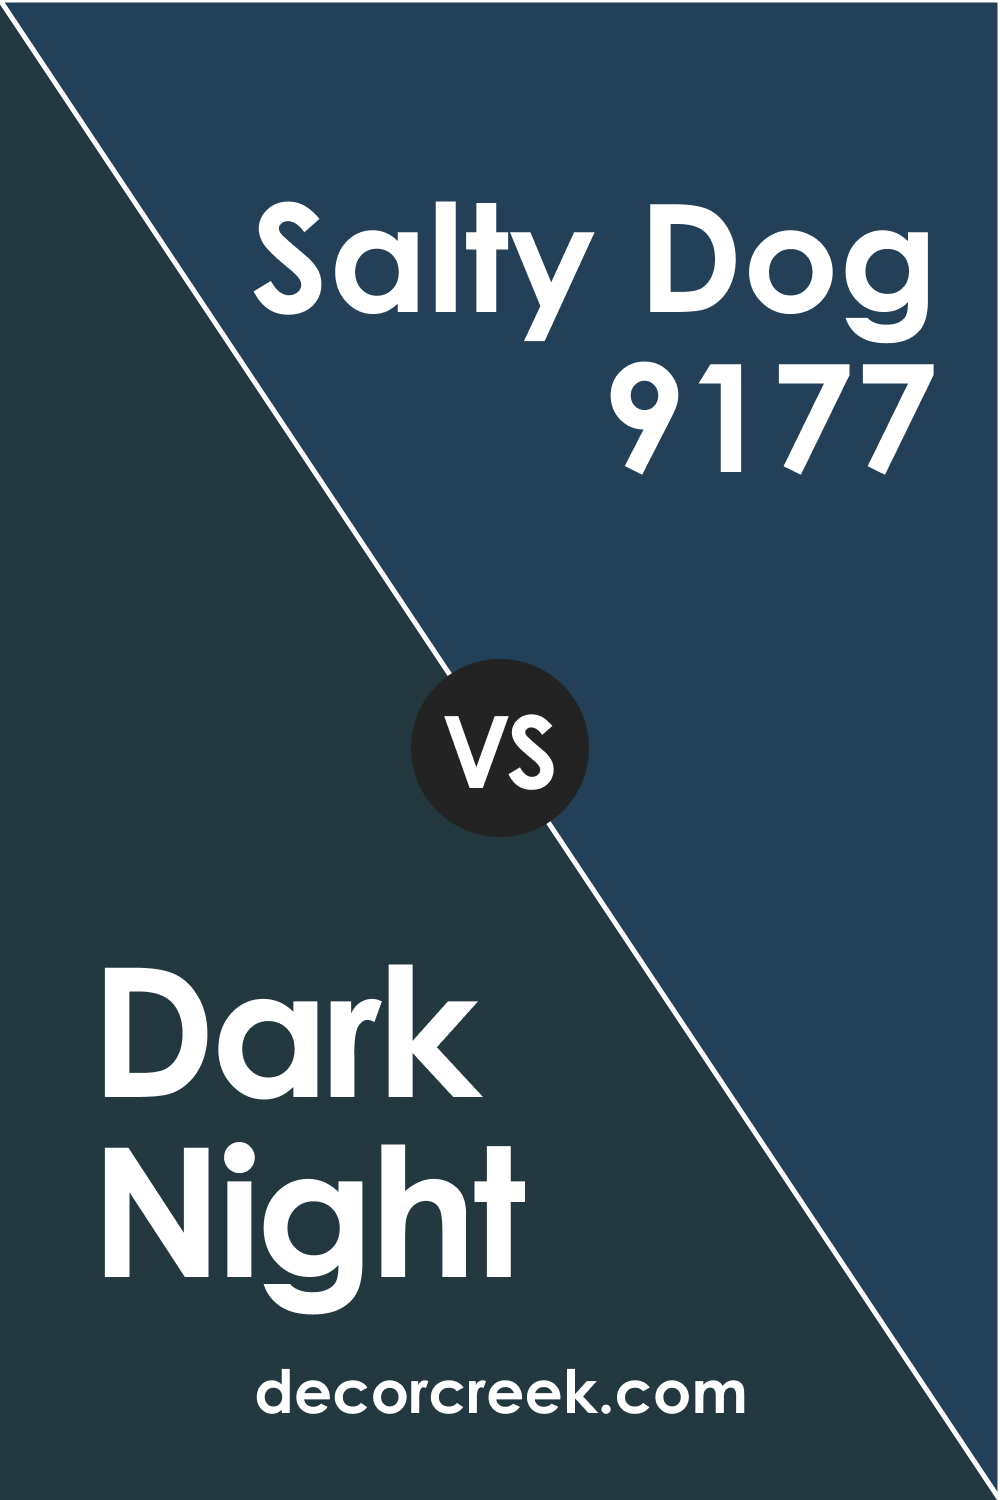 Dark Night vs Salty Dog